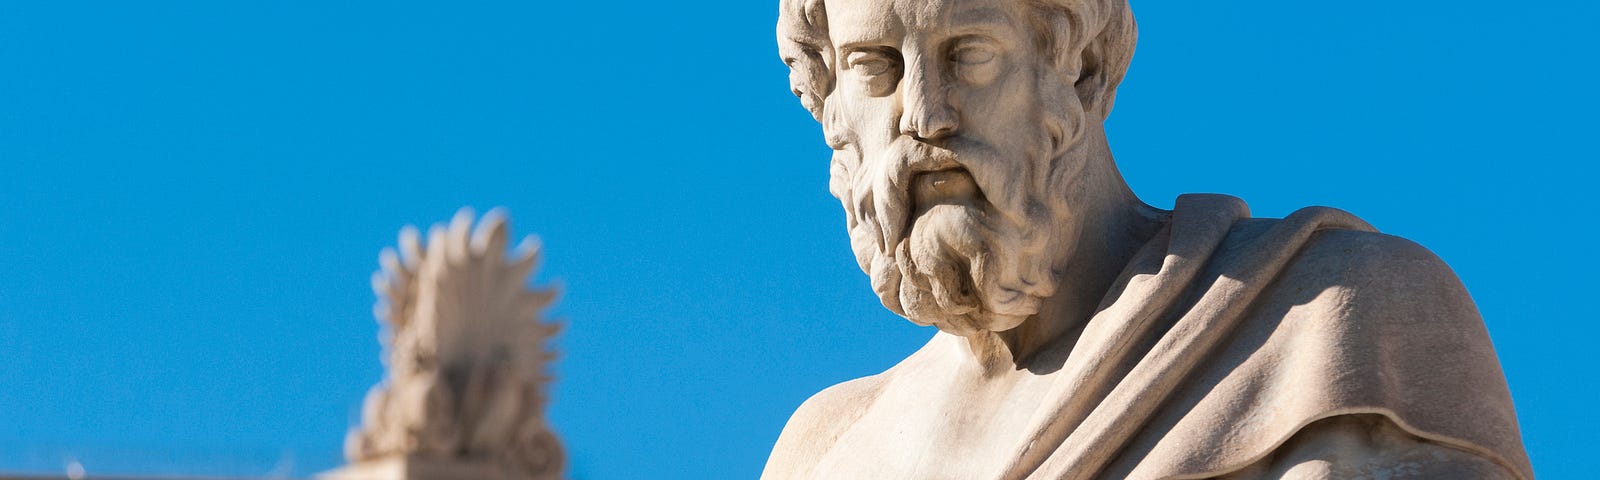 A statue of Plato